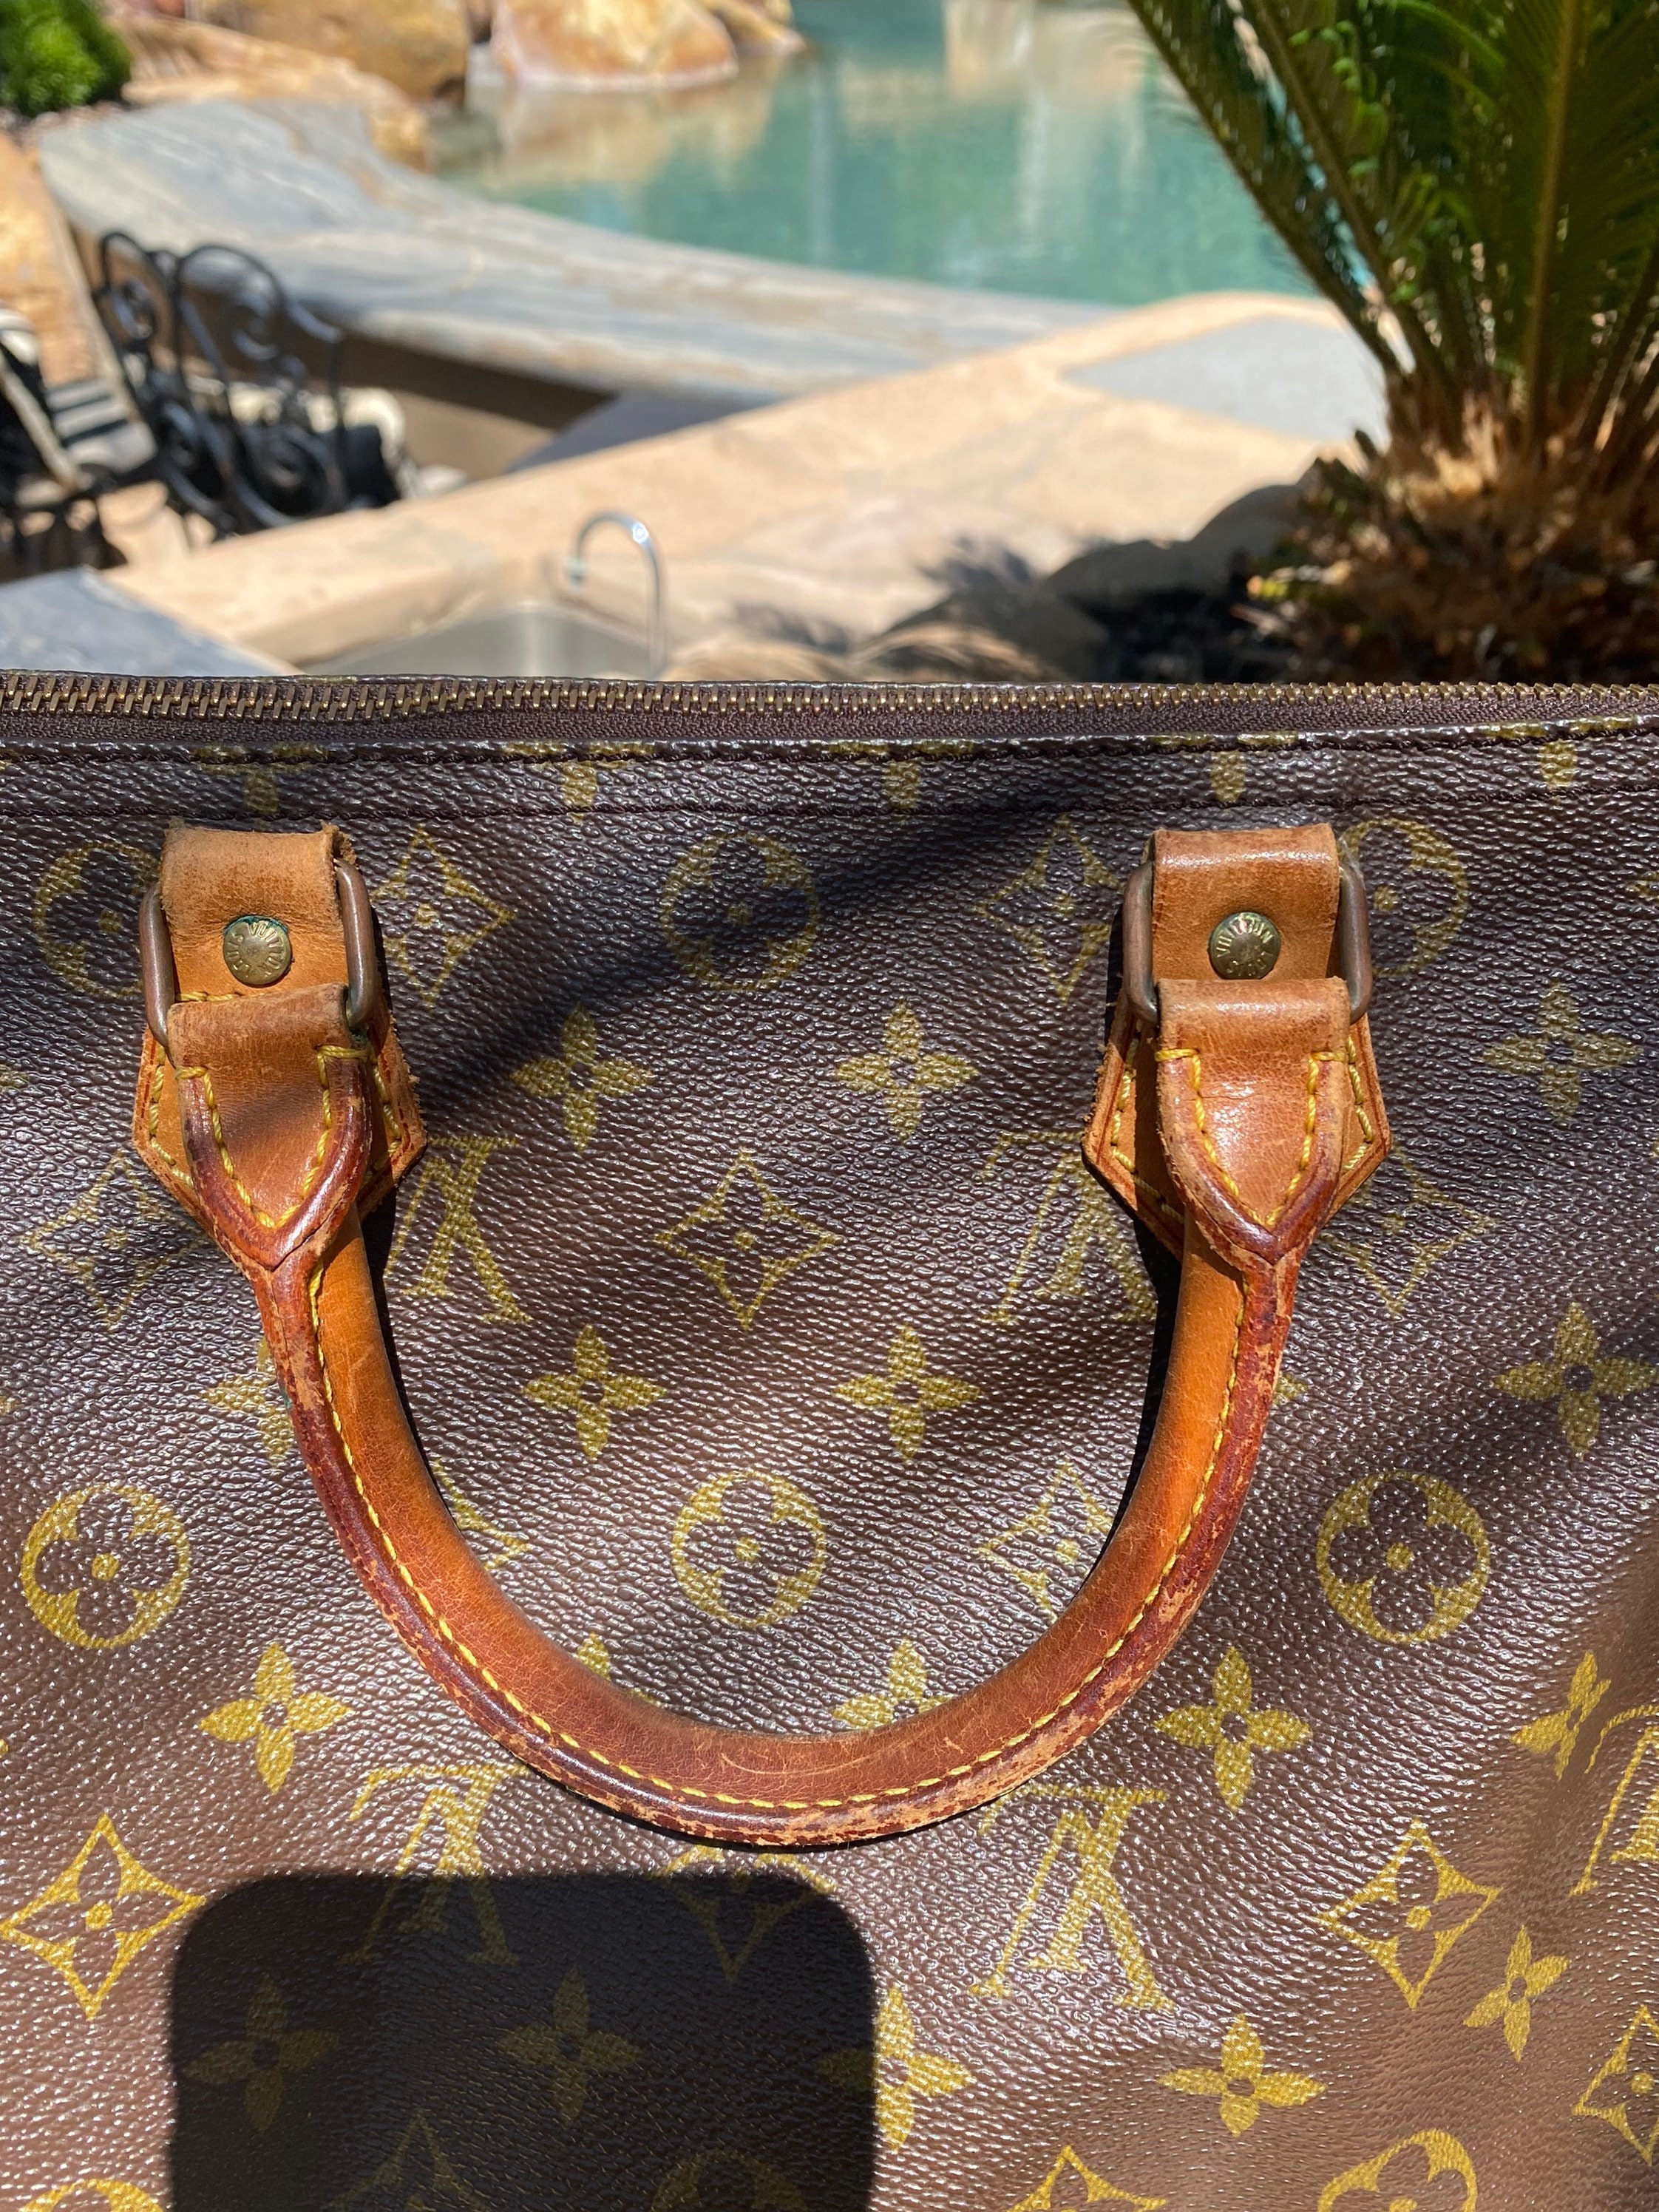 Epic Authentic Louis Vuitton Speedy 30 Handle Bag 